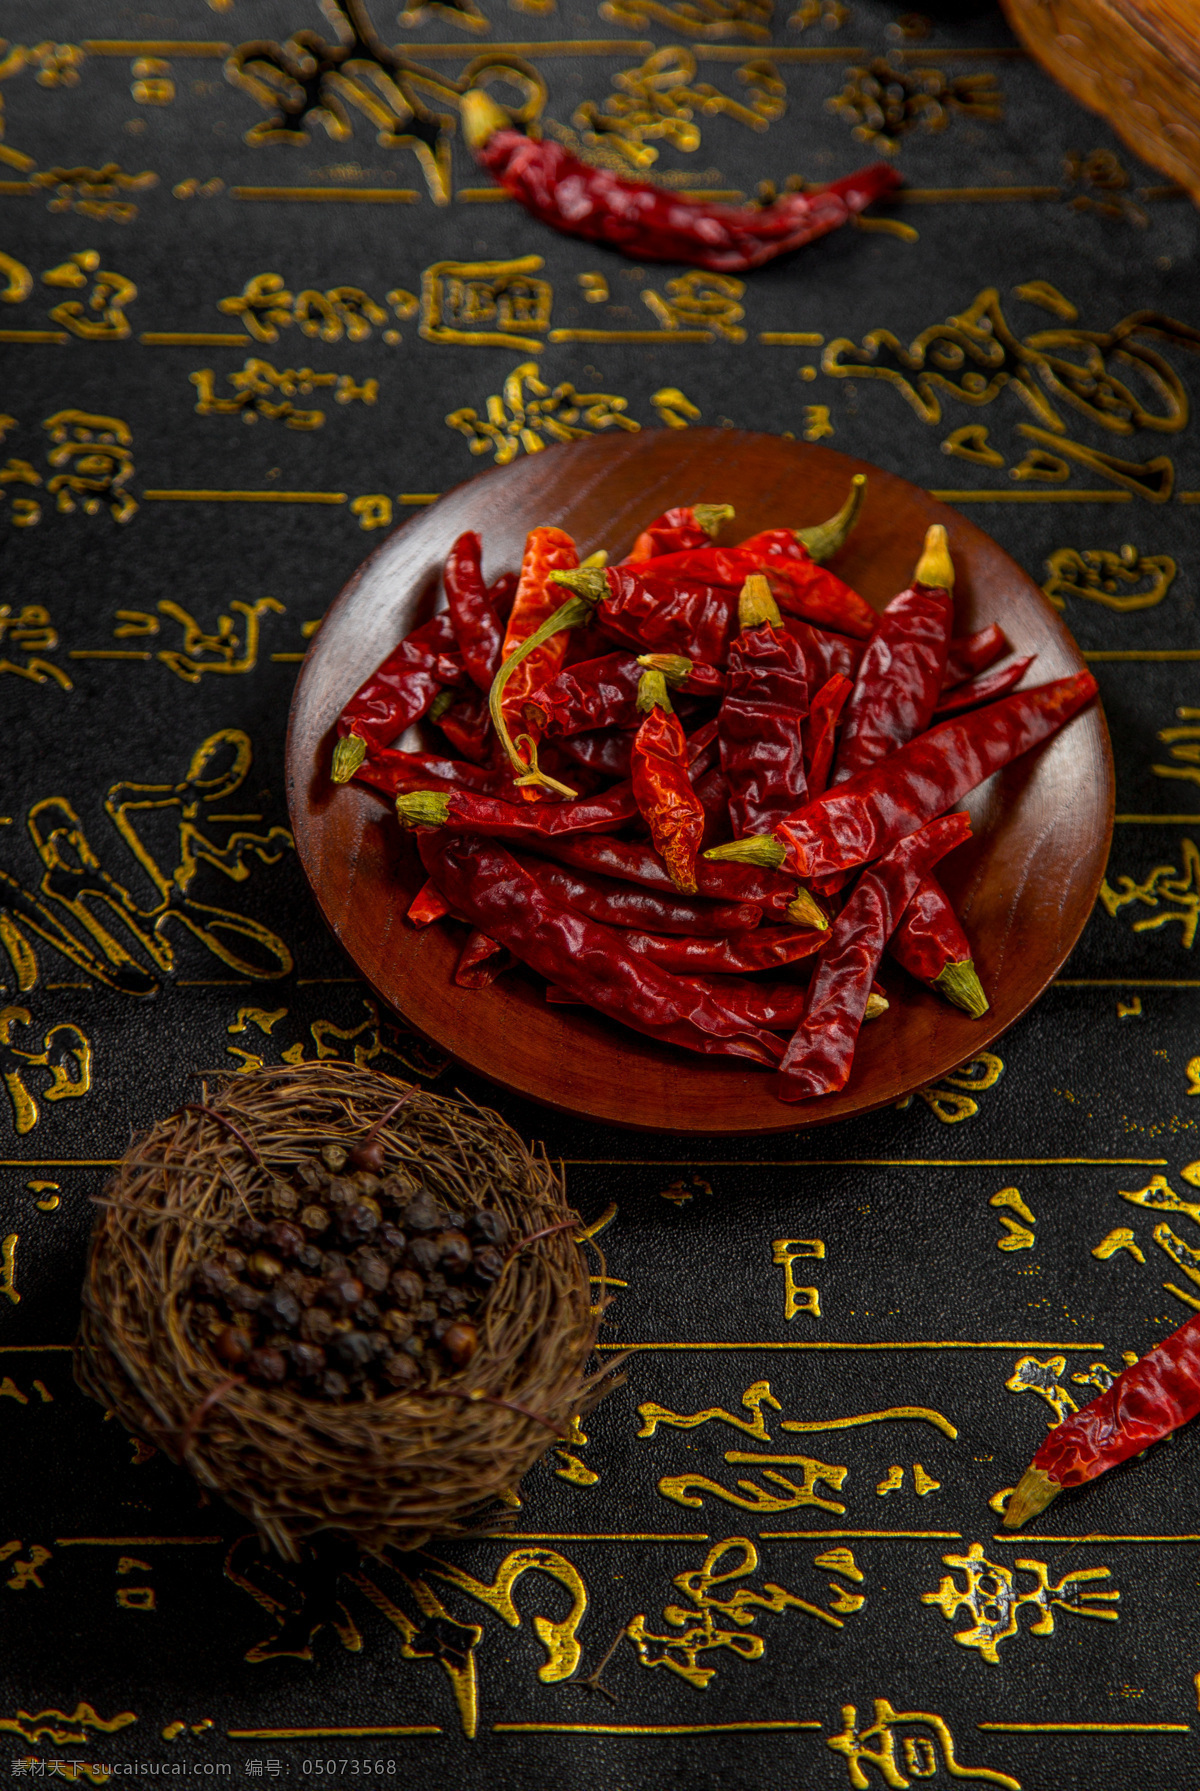 辣椒 配料 食 材 背景 海报 素材图片 食材 食物 中药 水果 类 餐饮美食